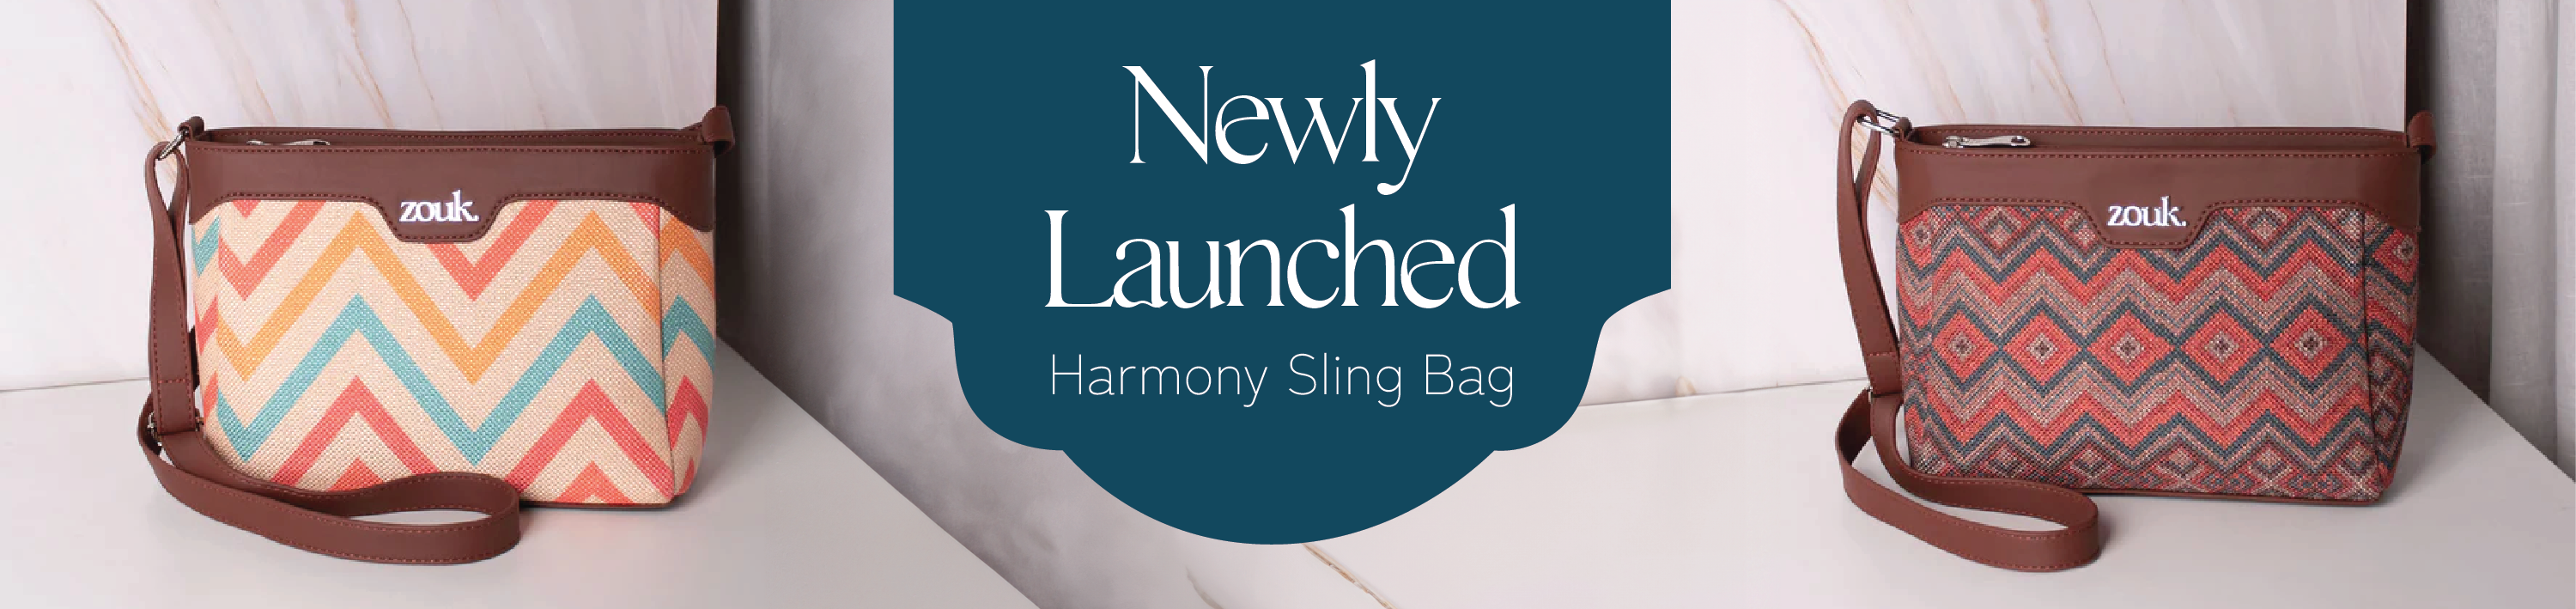 Harmony Sling Bag